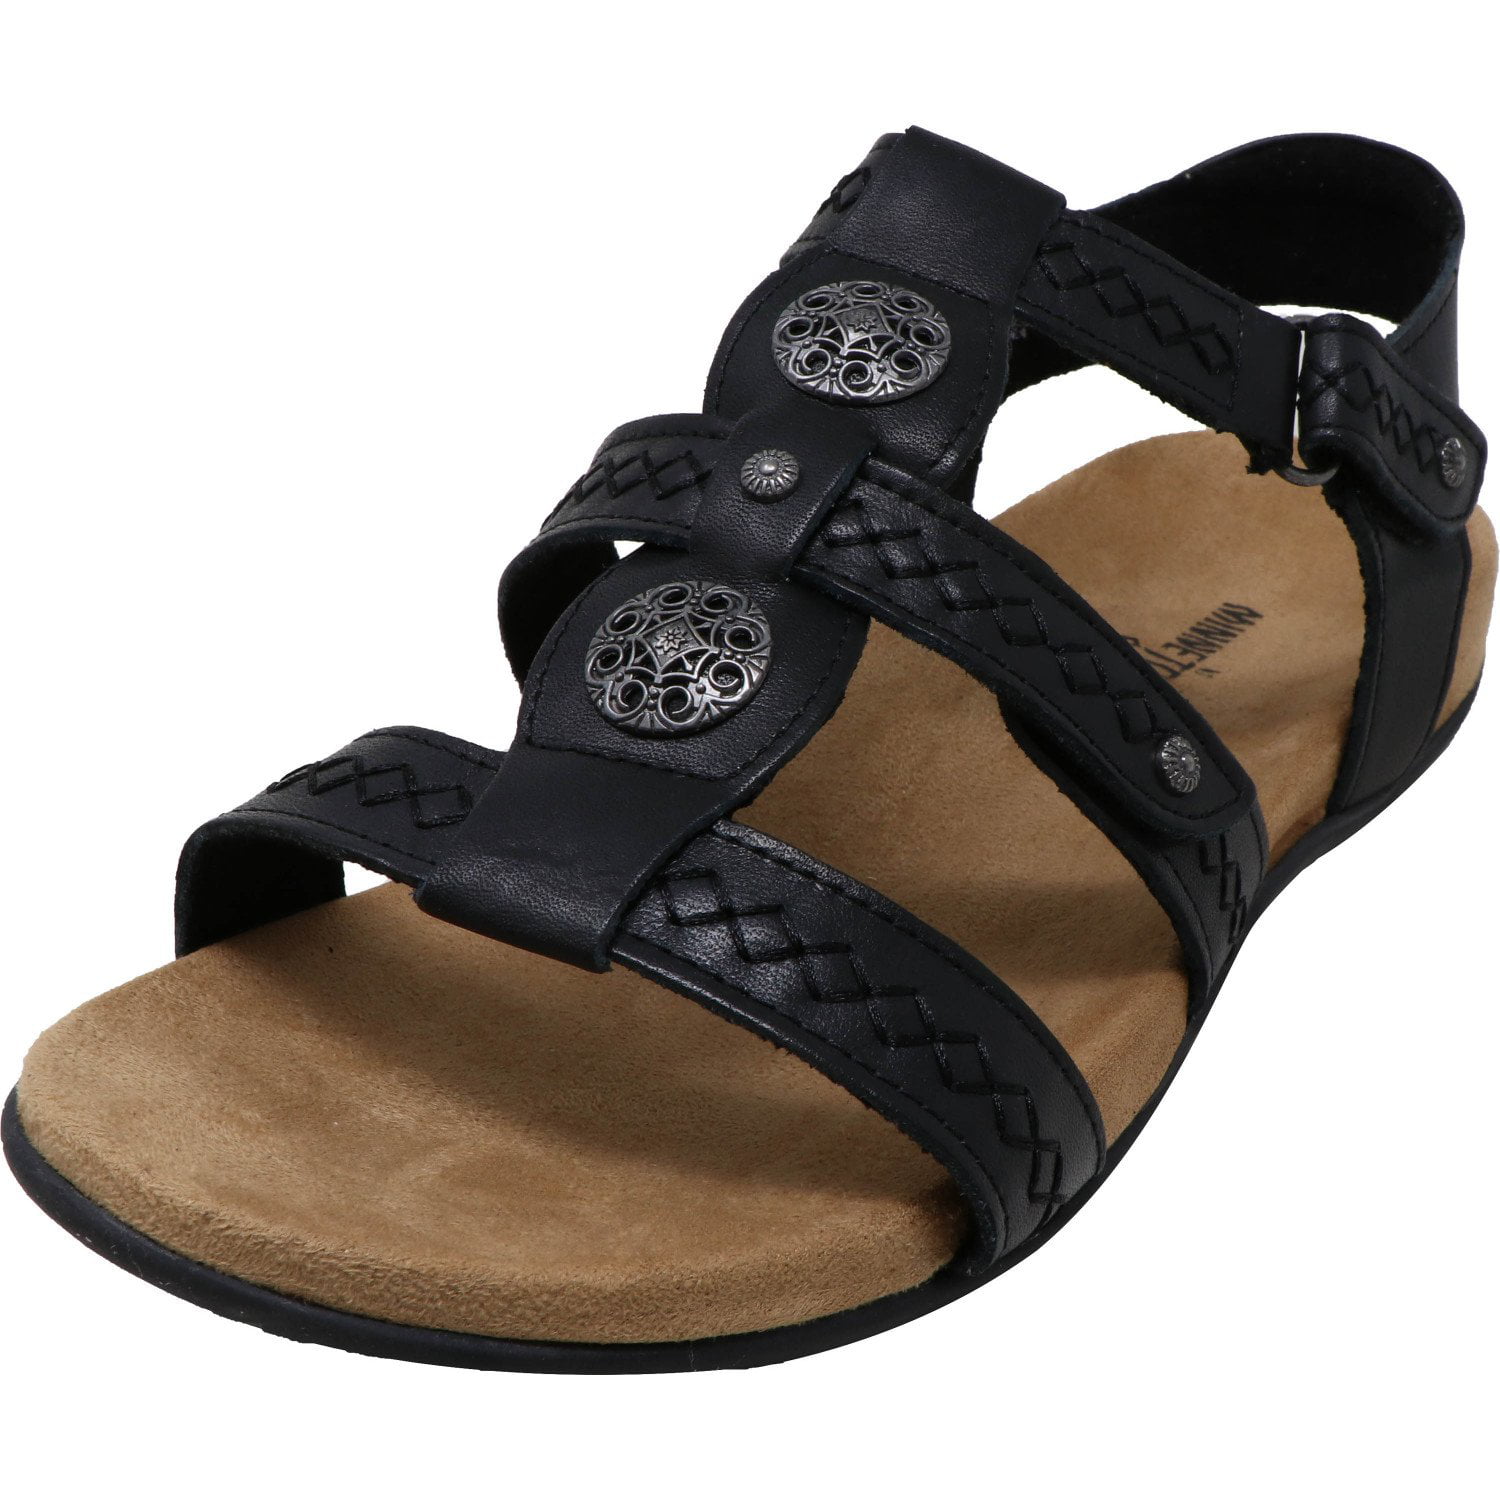 minnetonka leather sandals